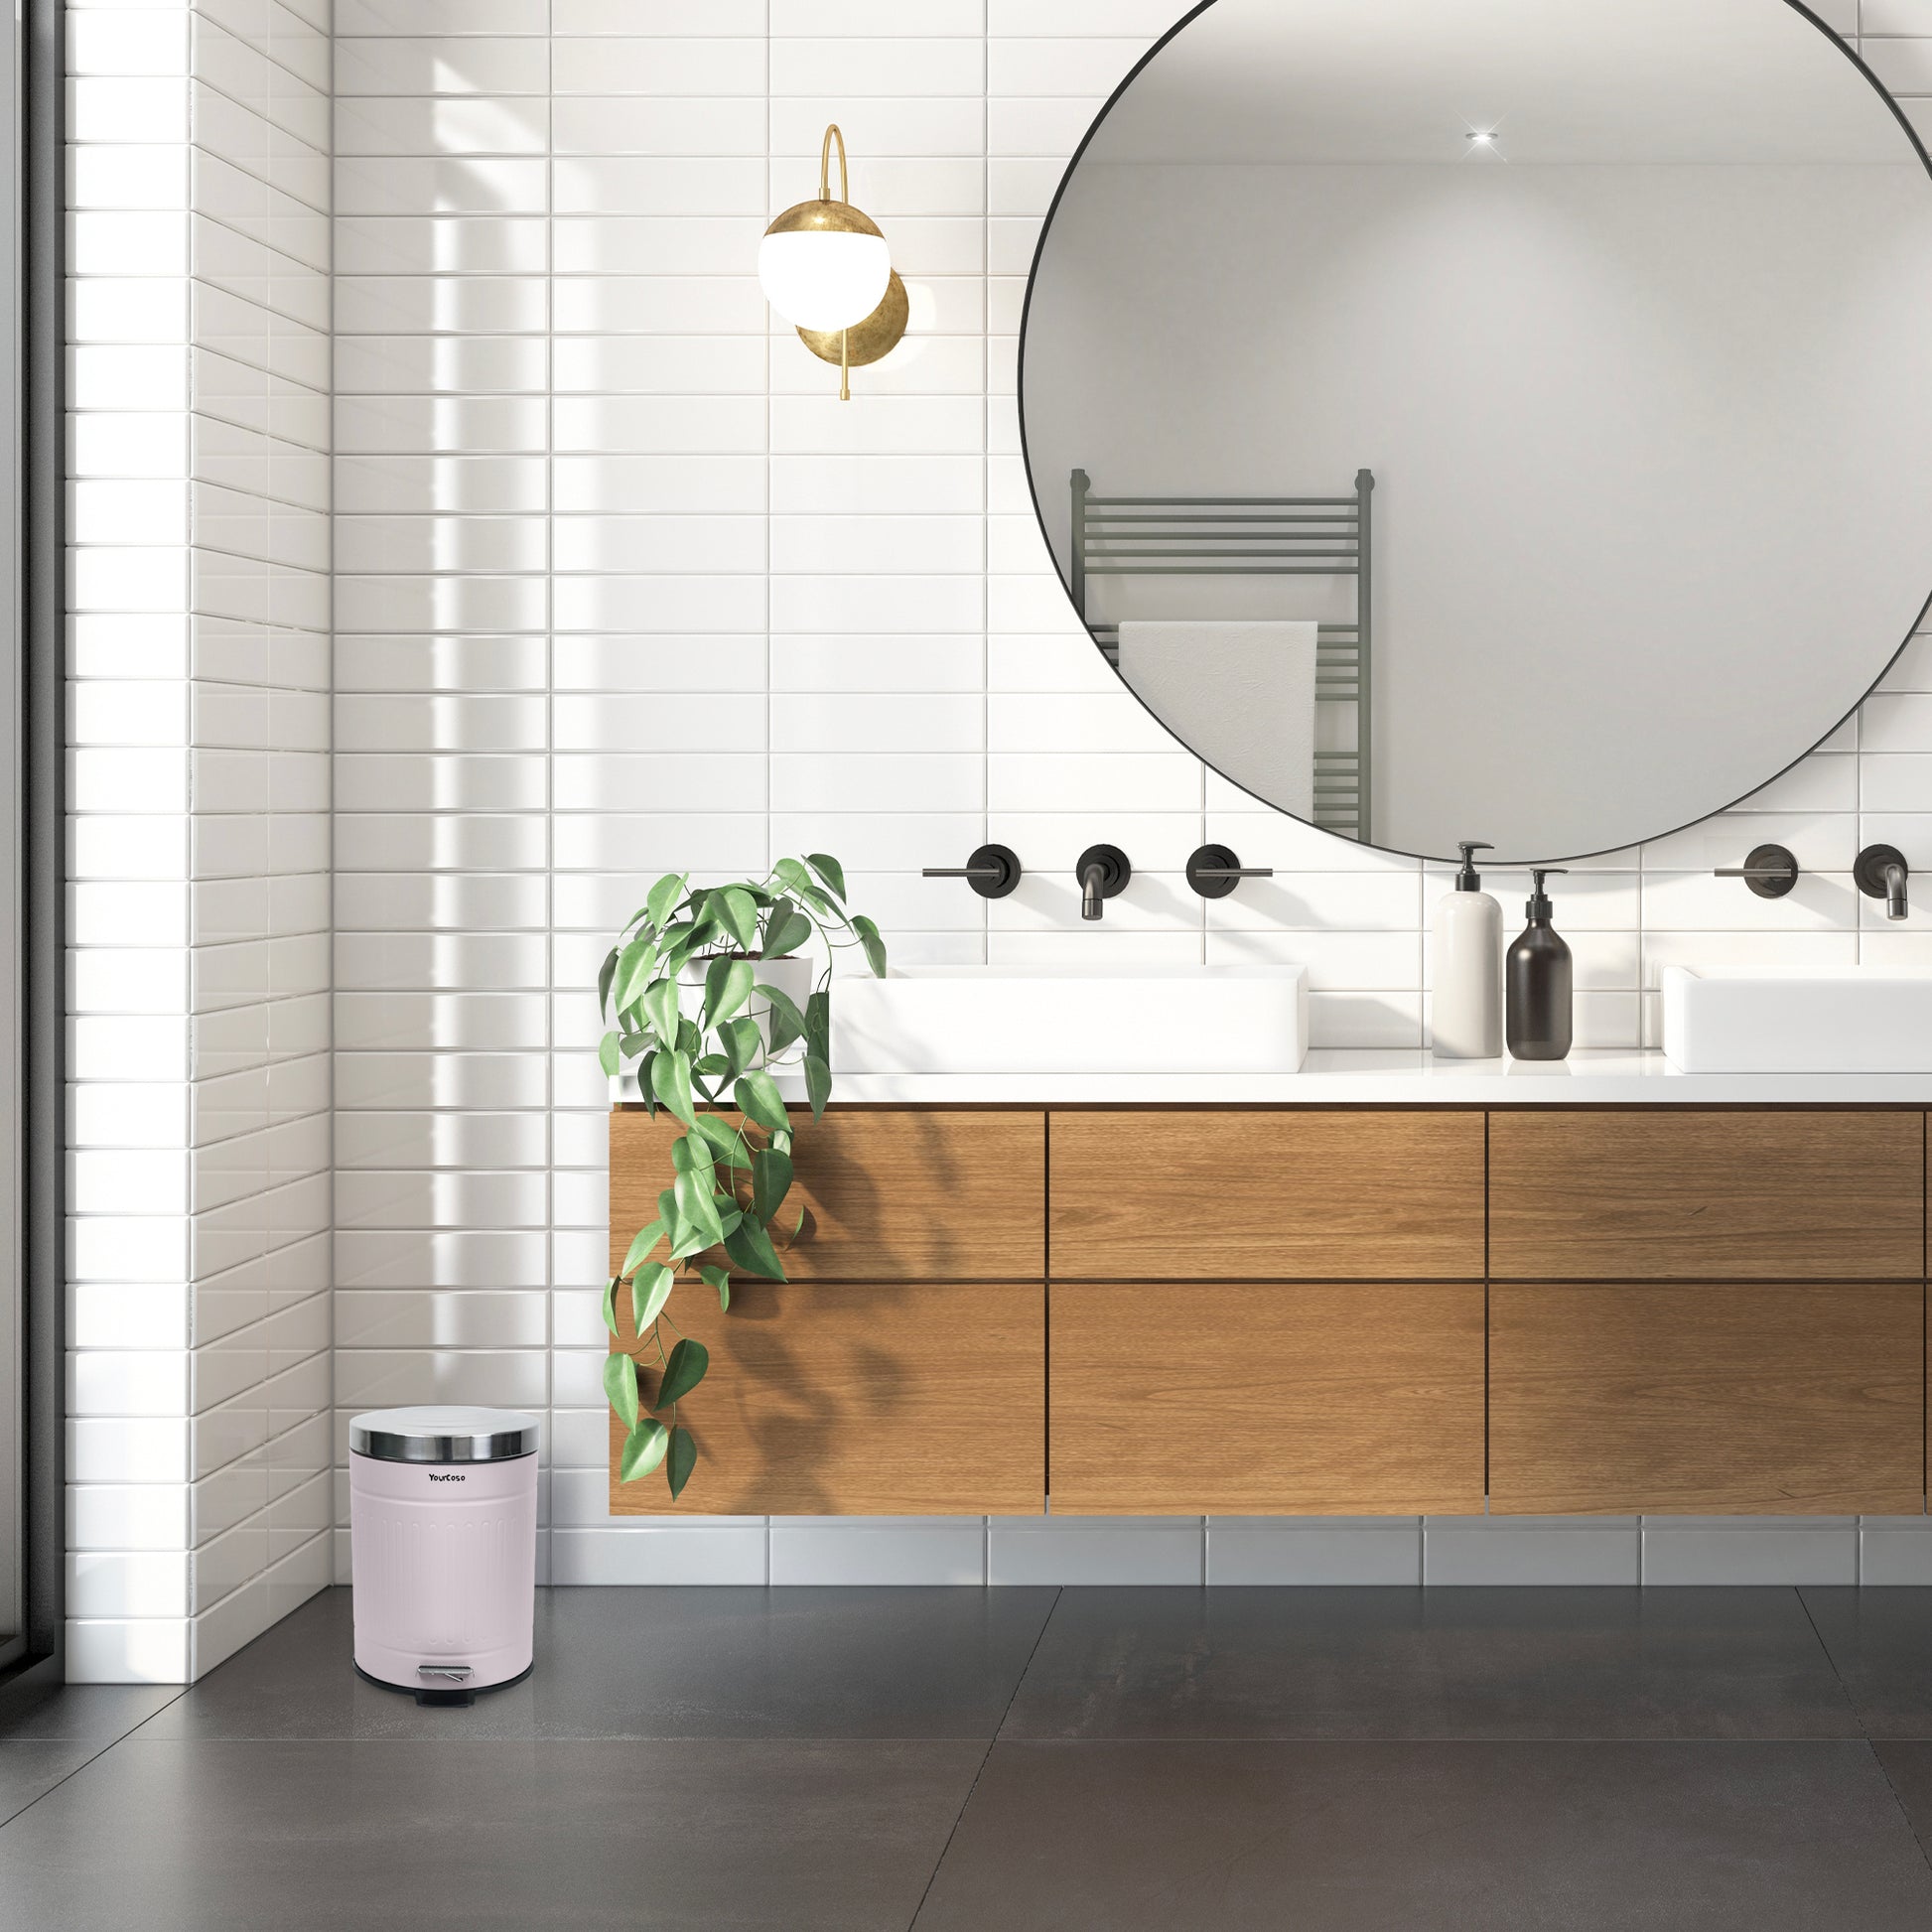 Ein Badezimmer mit einem großen Spiegel und einem weißen Waschbecken. Das Waschbecken verfügt über einen eleganten YourCasa® Mülleimer [5L] Edelstahl Retro Design - für Badezimmer oder Küche Wasserhahn.